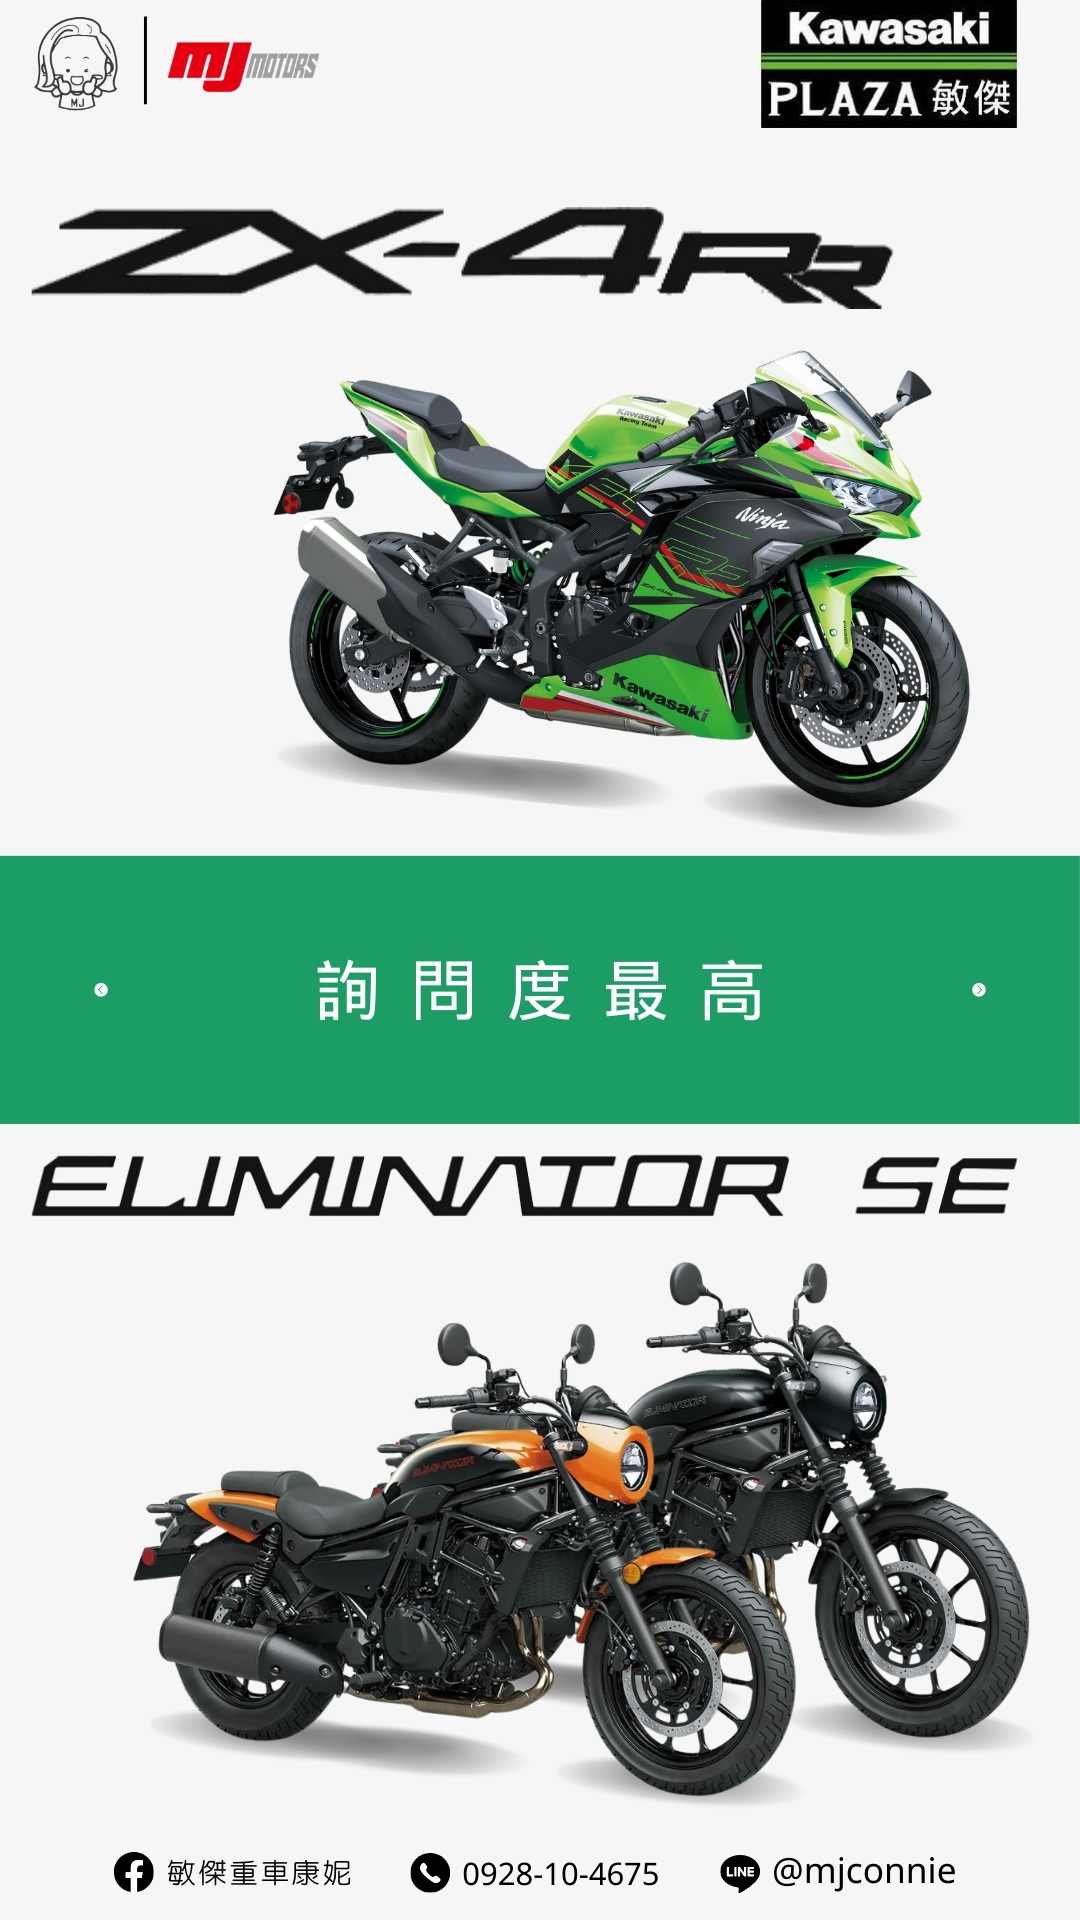 【敏傑車業資深銷售專員 康妮 Connie】Kawasaki ZX-4RR - 「Webike-摩托車市」 『敏傑康妮』Kawasaki ZX-4RR & Eliminator 500SE 持需接單預訂中 把握現在的好康～